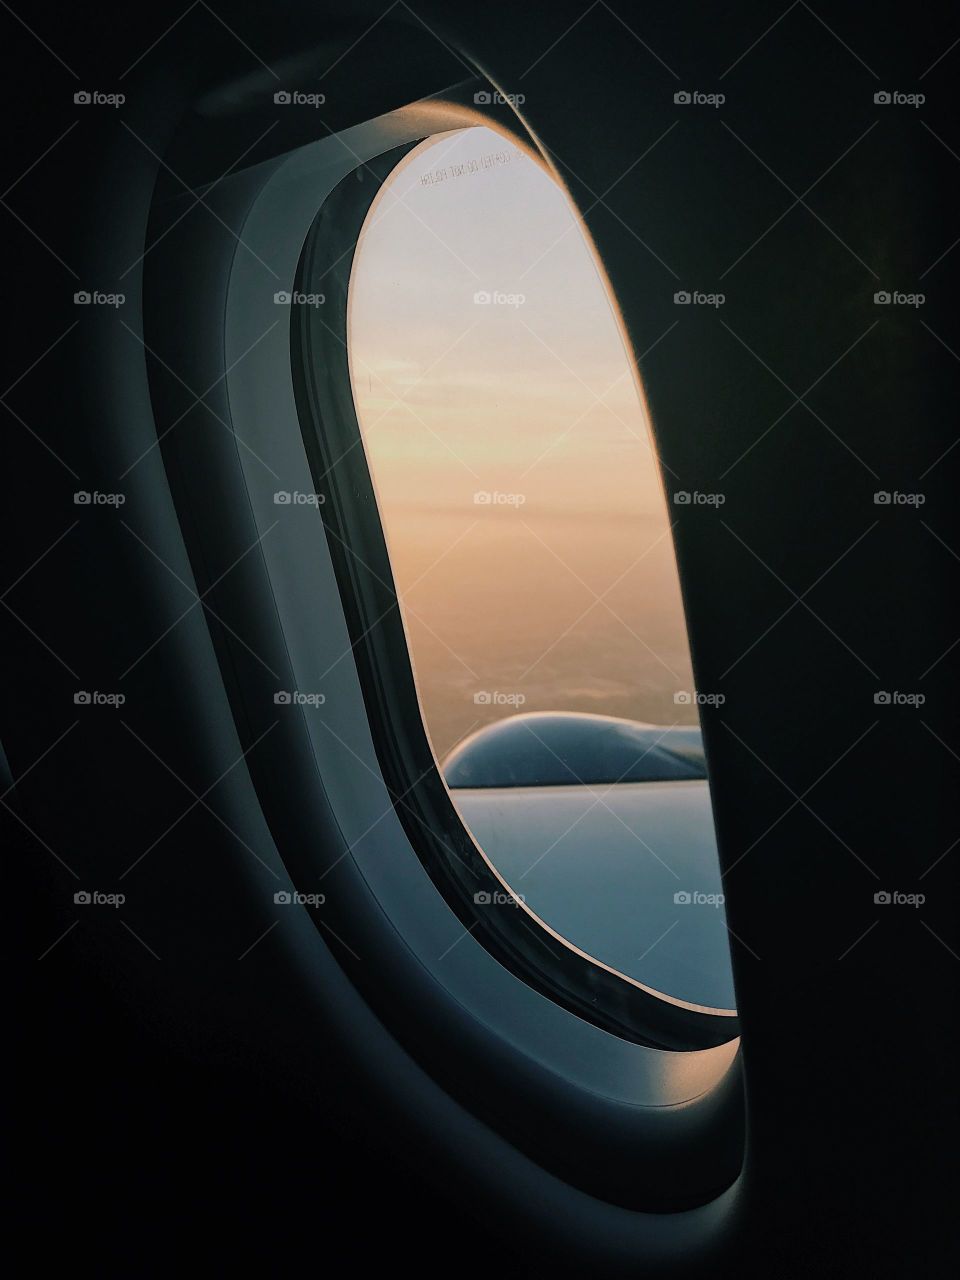 View through an airplane